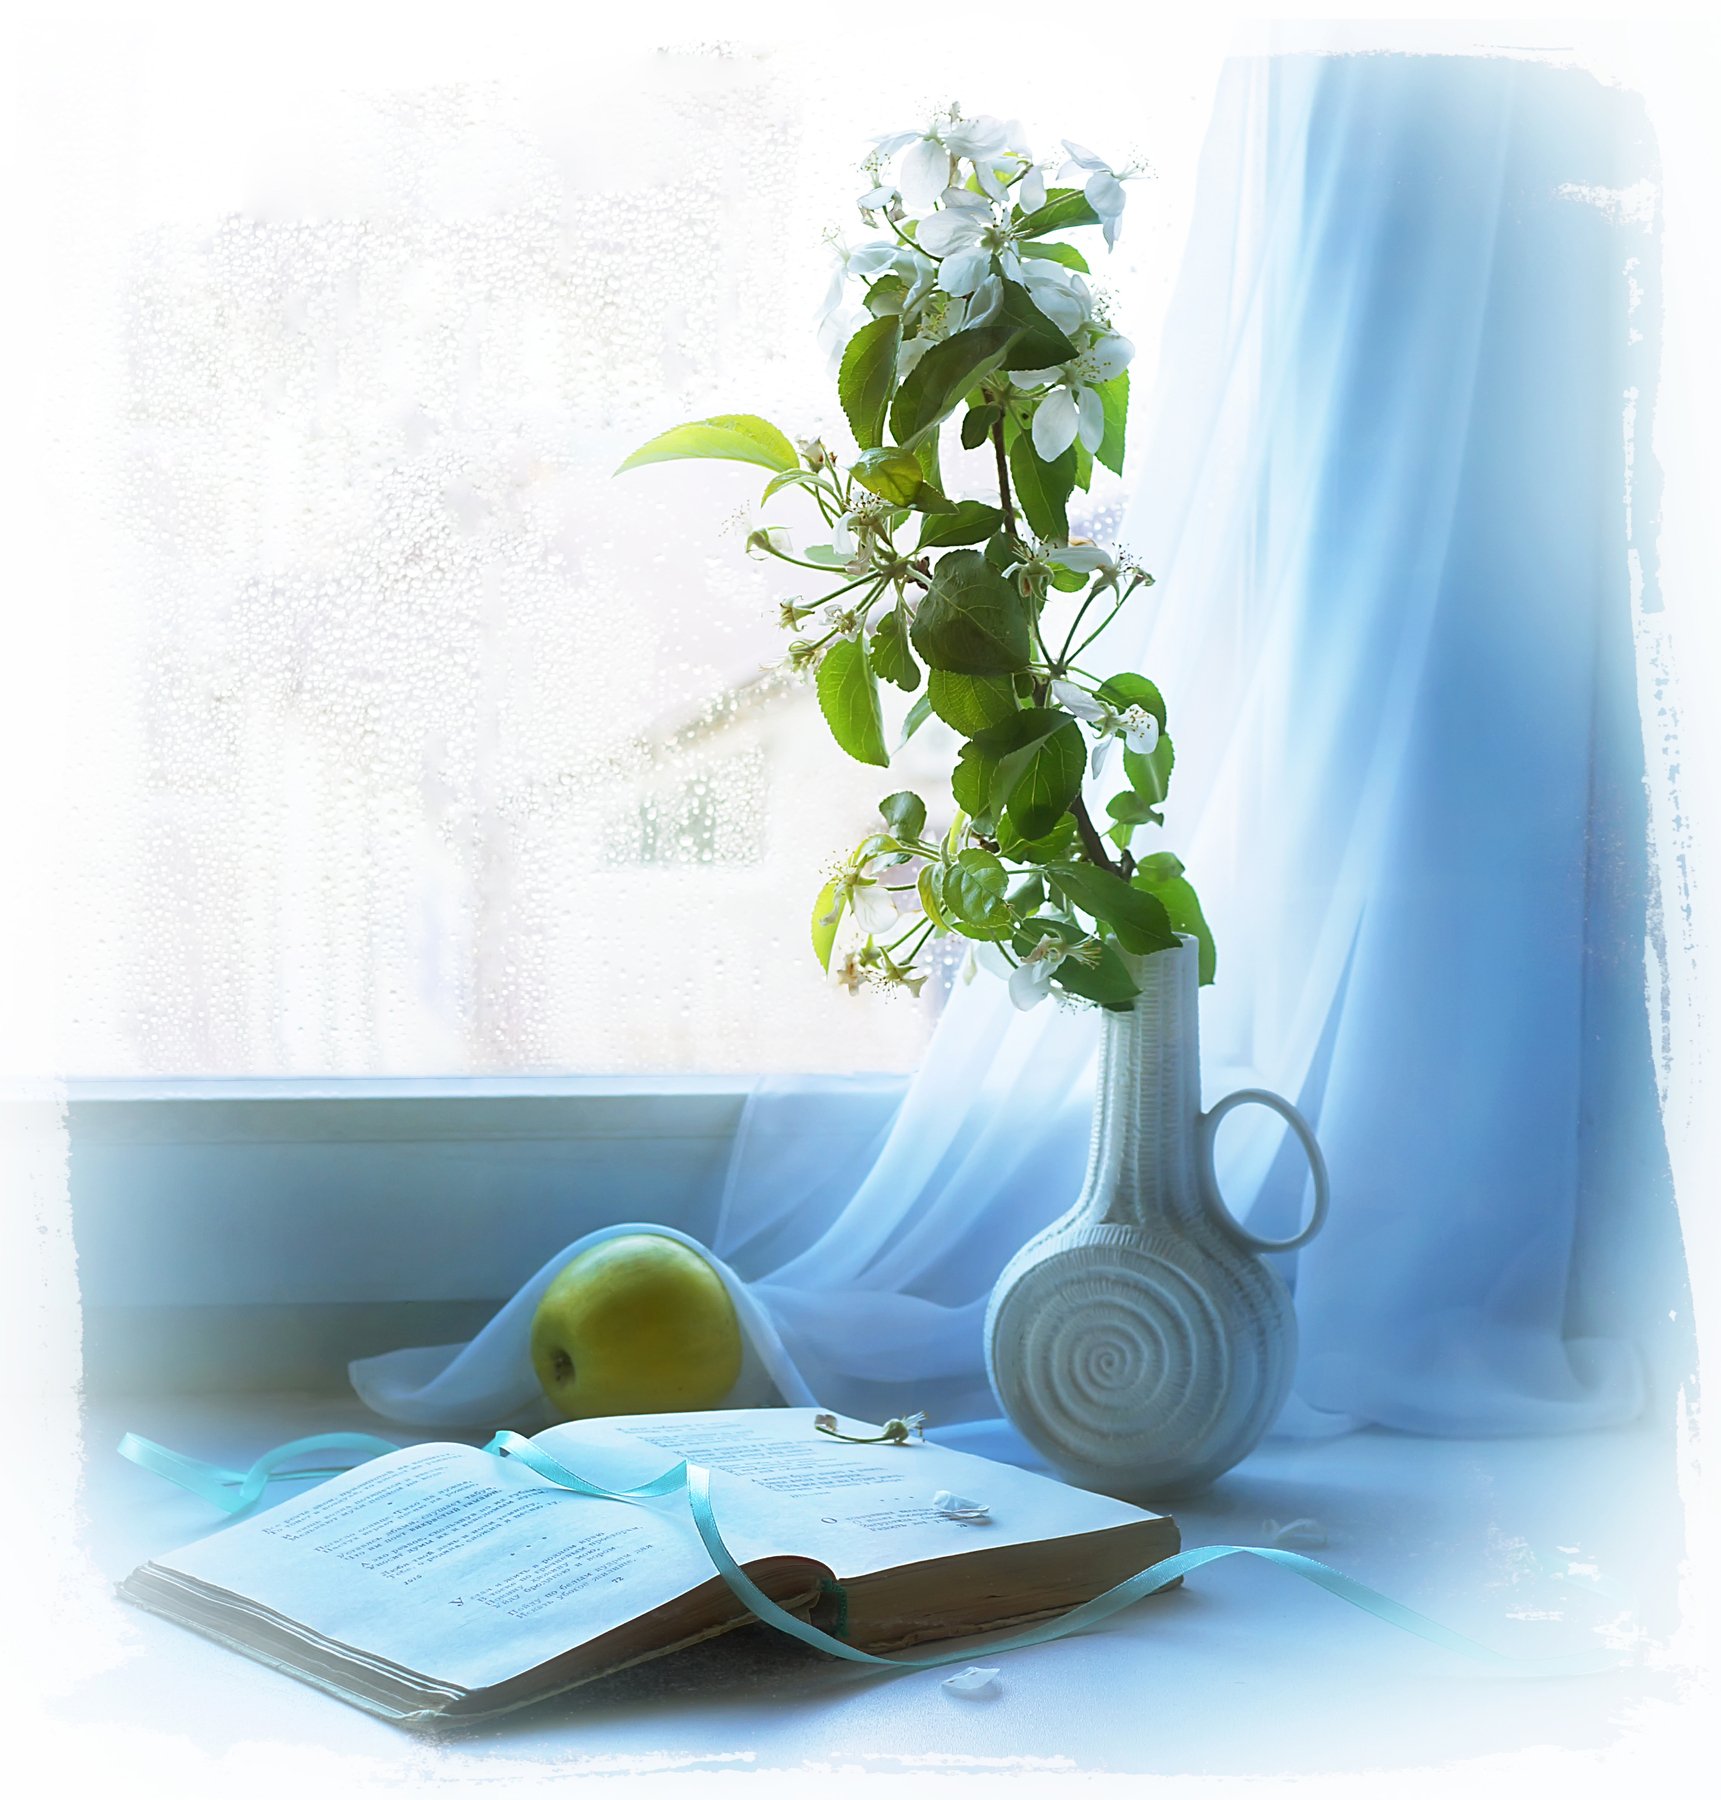 весна, букет,утро, яблоко, книга, окно, Айснер Юлия